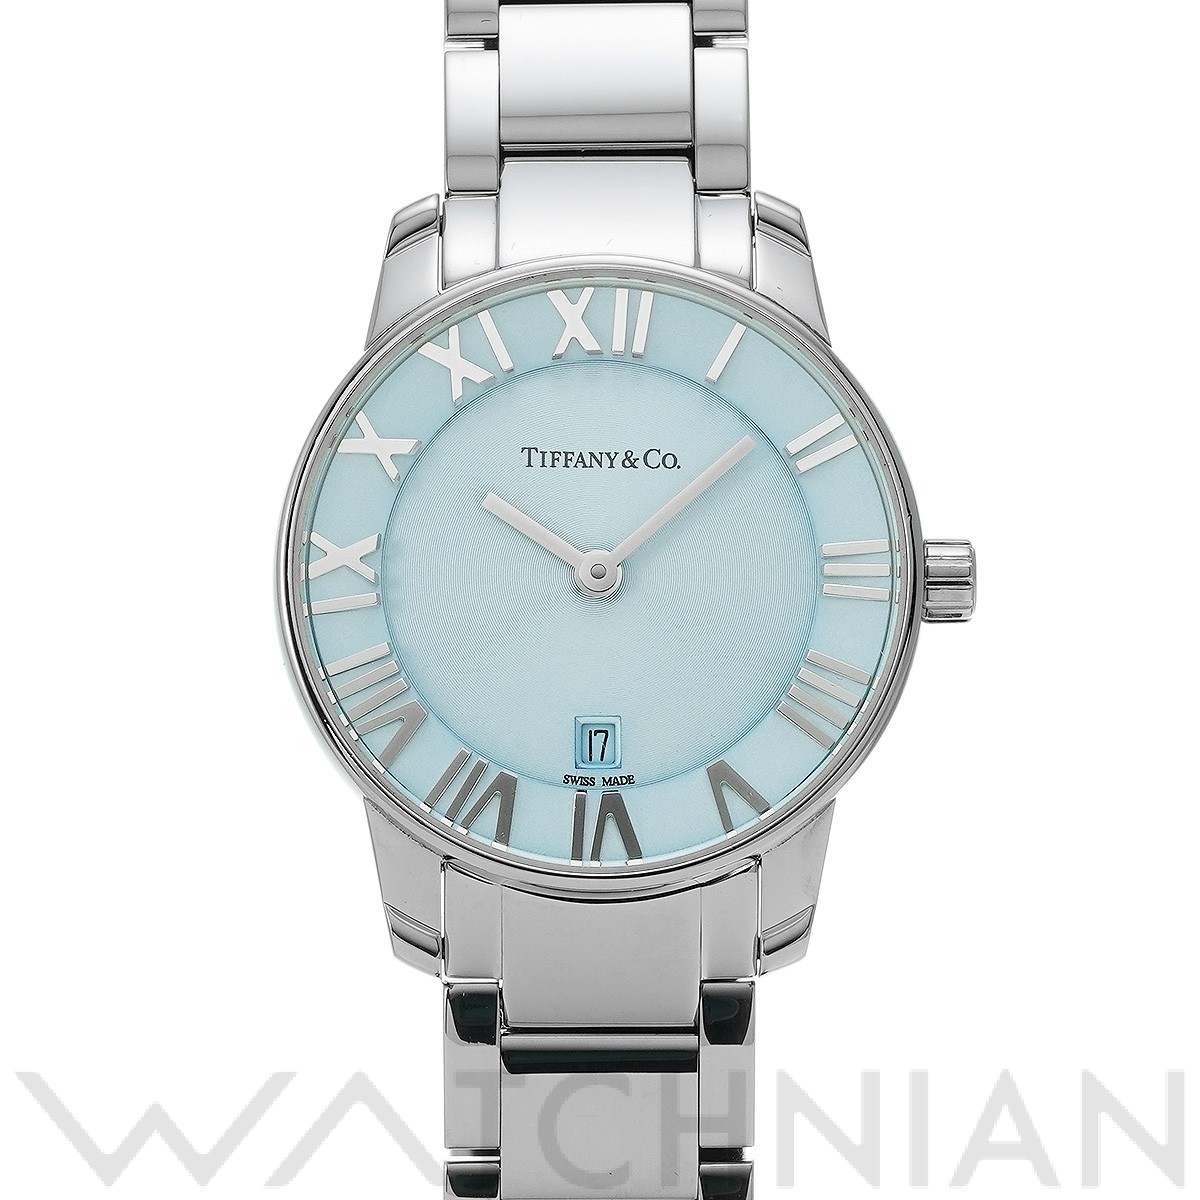 ティファニー / TIFFANY & Co. アトラス 2ハンド 29mm 37447188 アイスブルー レディース 時計  【中古】【wristwatch】